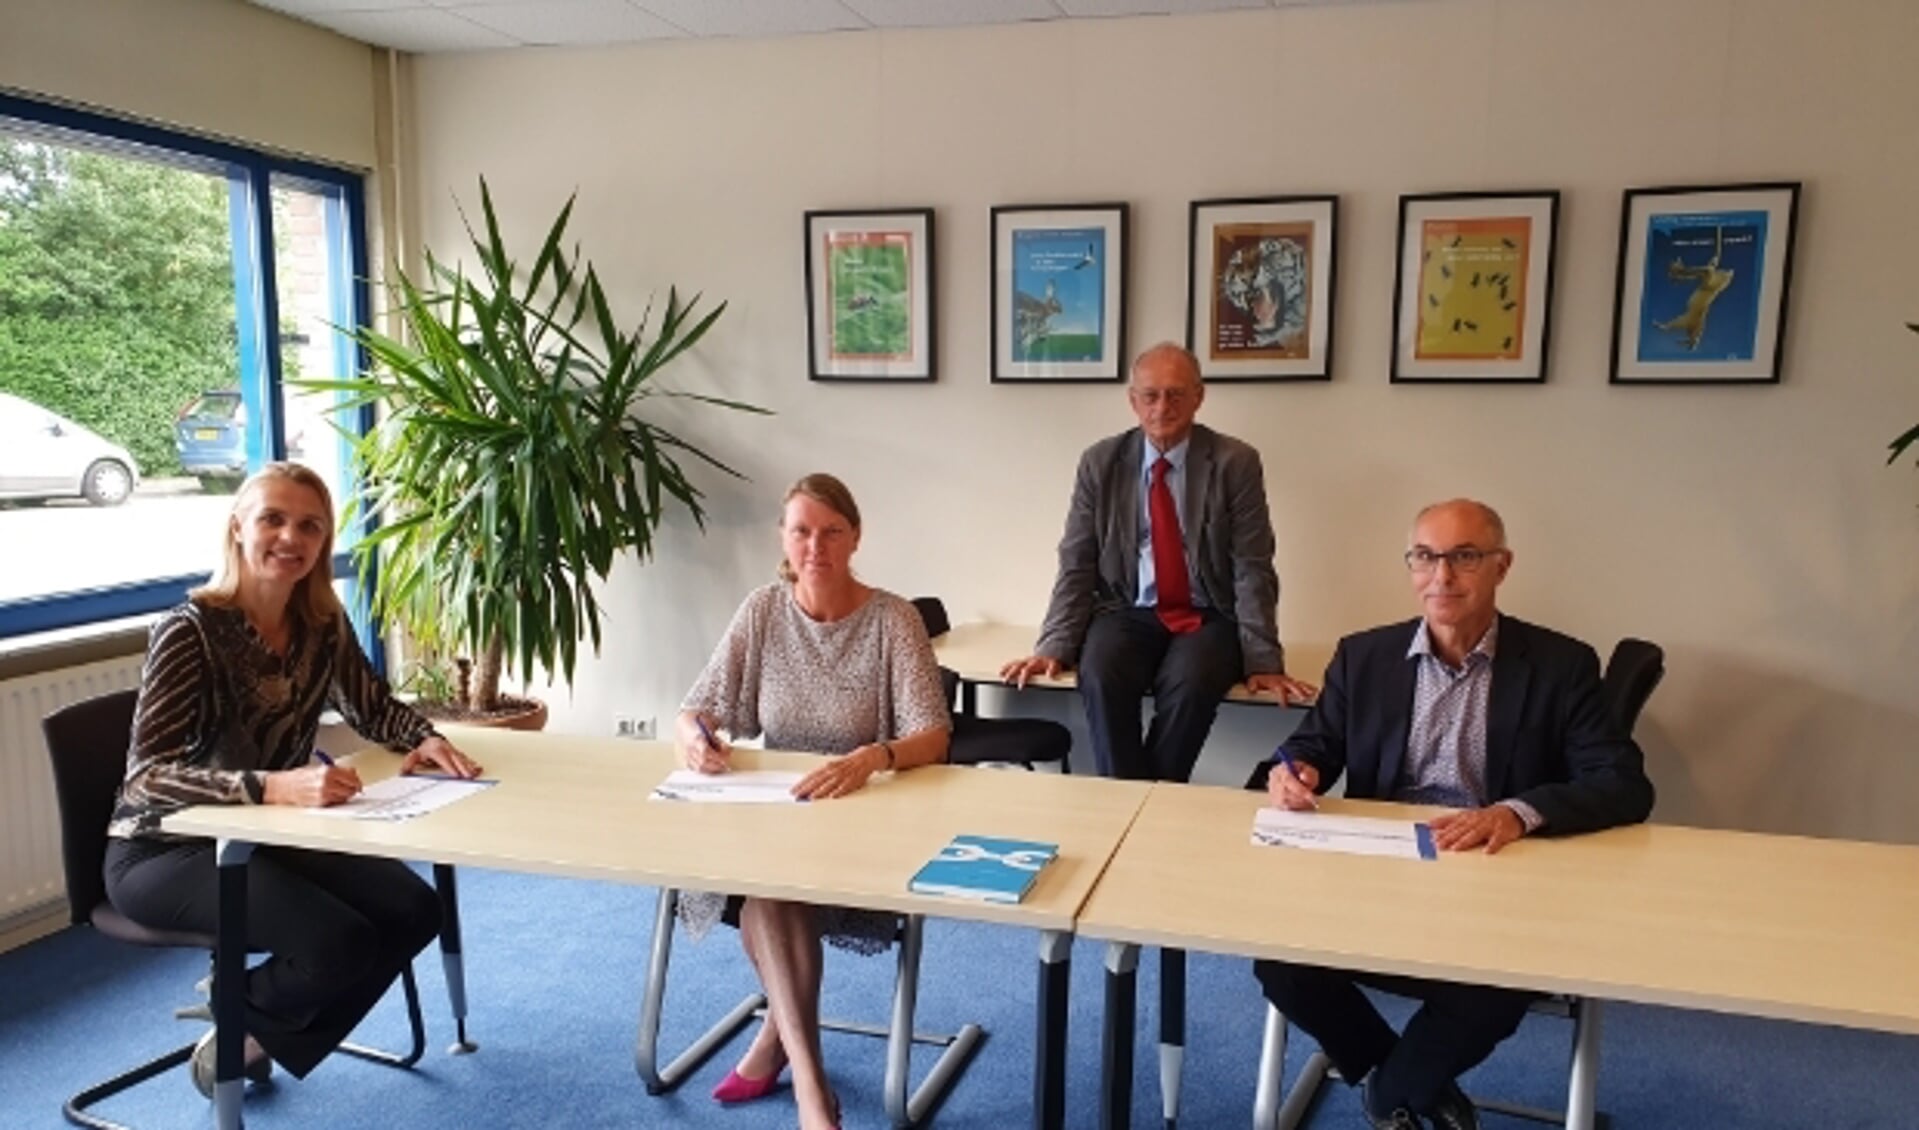 V.l.n.r: Veronique van der Heijden (directeur WerkwIJSS), Yvonne Halman (gemeentesecretaris Lopik), Kees Blokland (voorzitter RAS) en Mark Foekema (wethouder IJsselstein).